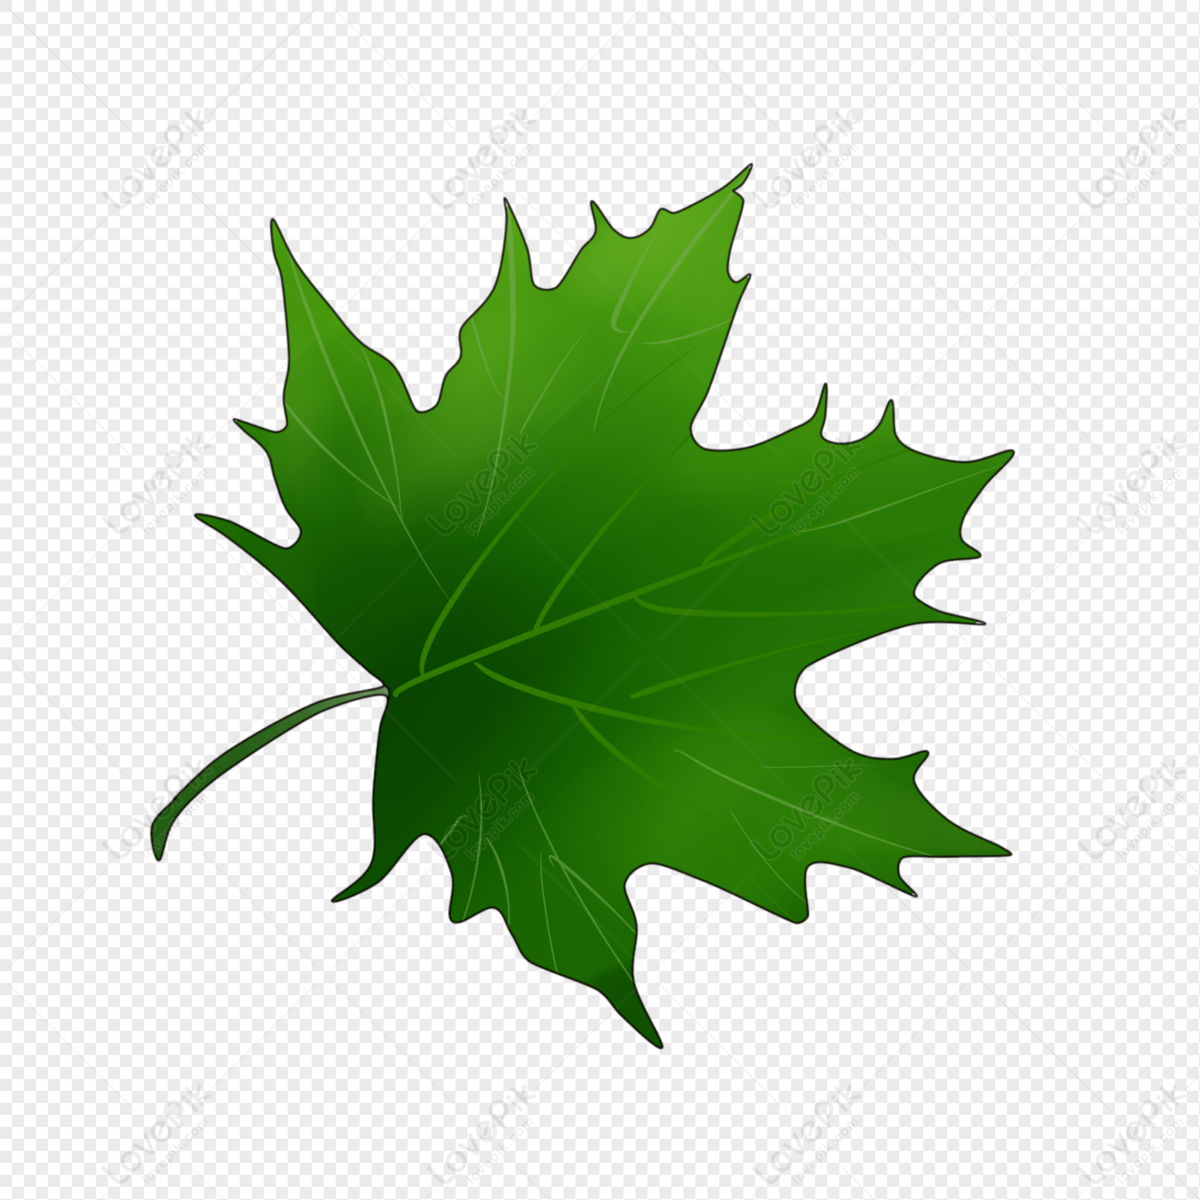 Lovepik Tree Leaf Shapes Image Png Image 401070949 Wh1200 